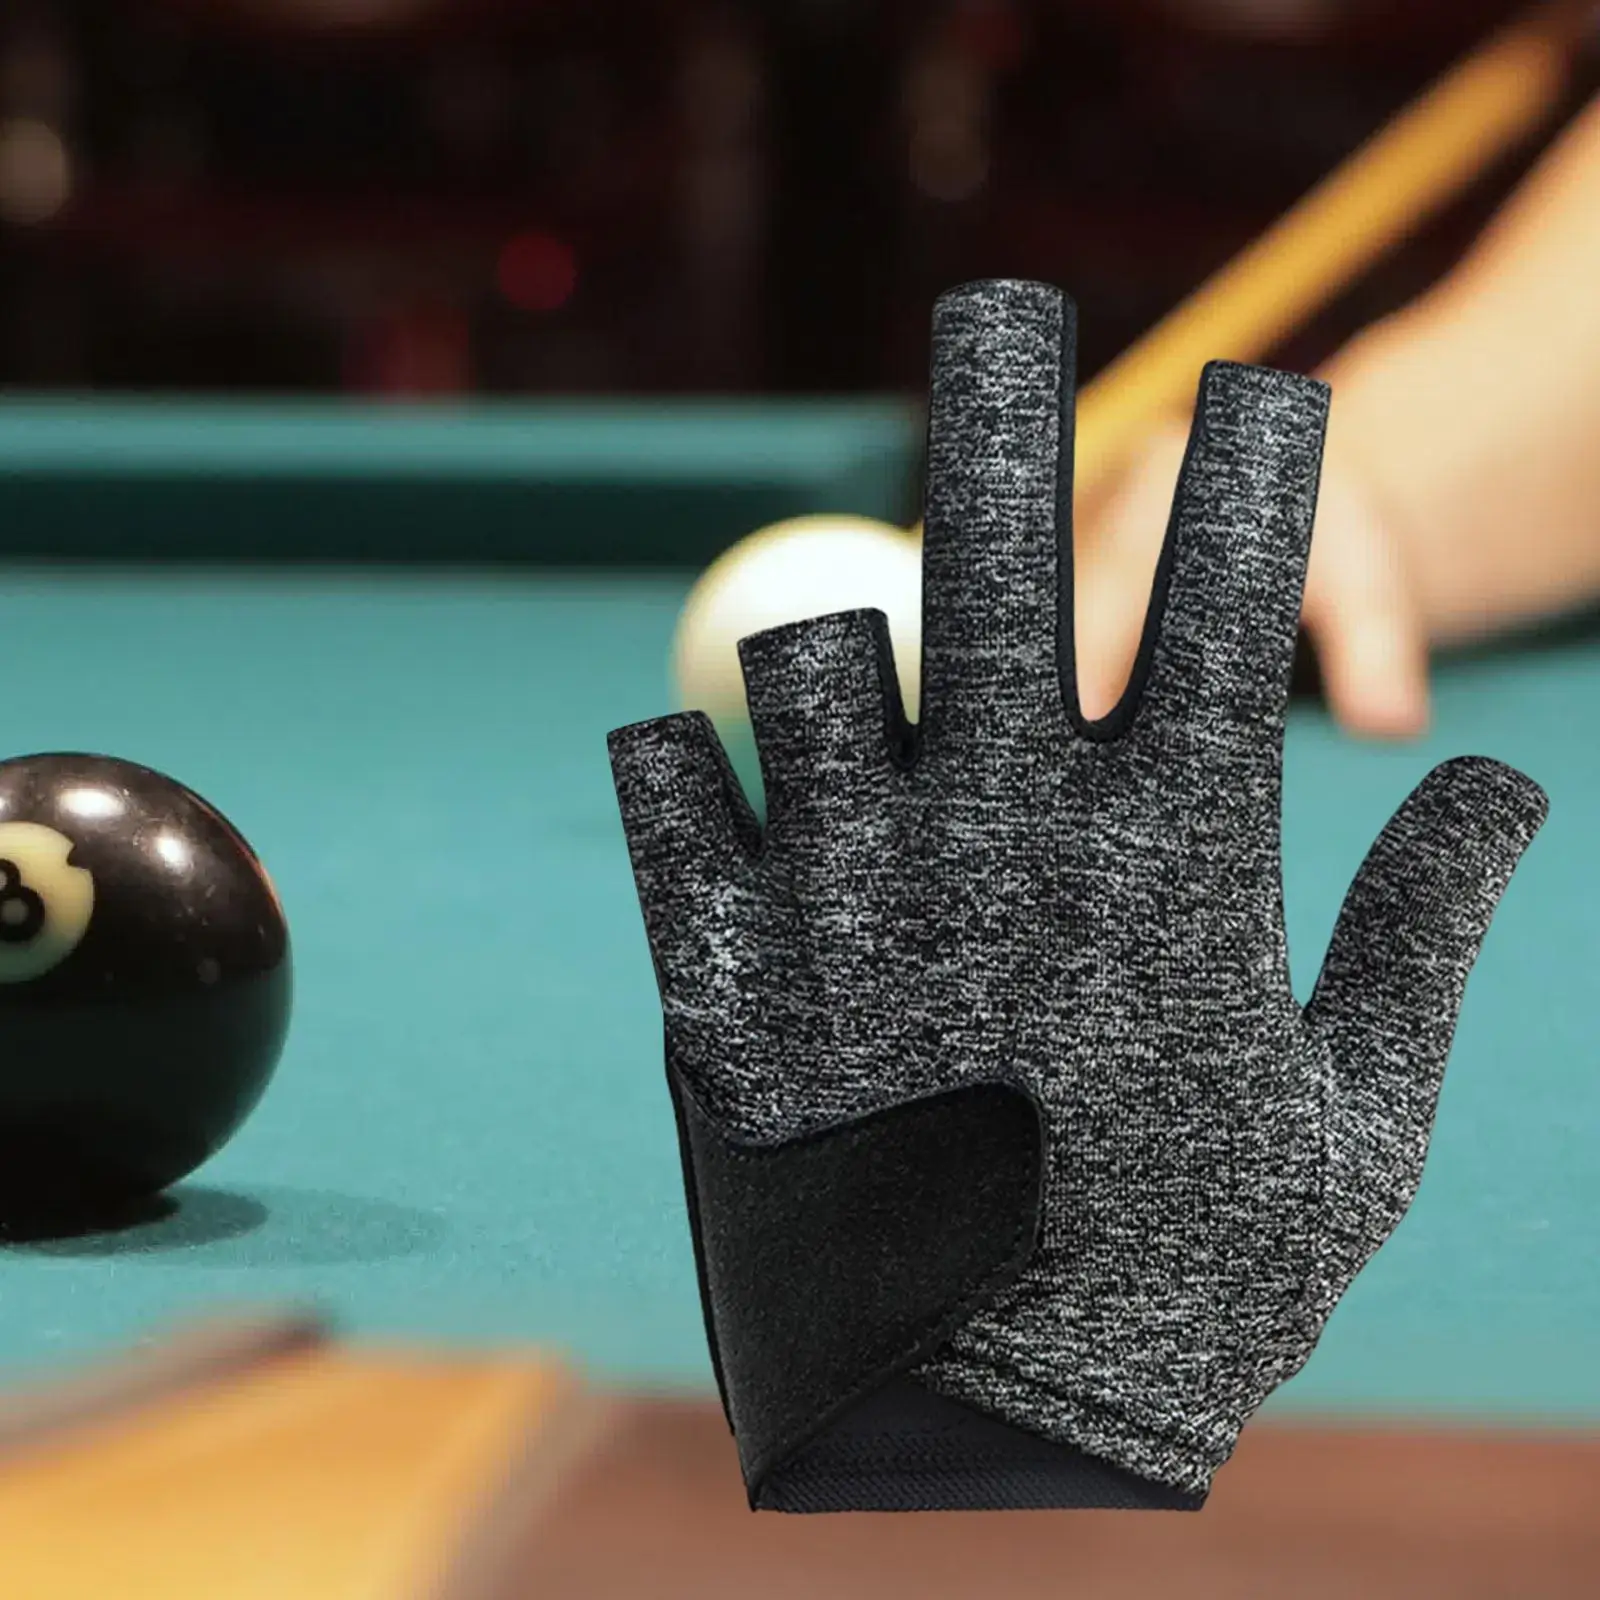 Billiards Glove Left Hand Adjustable Professional Five Finger Snooker Cue Glove Pool Glove for Billiard Teens Women Men Shooters